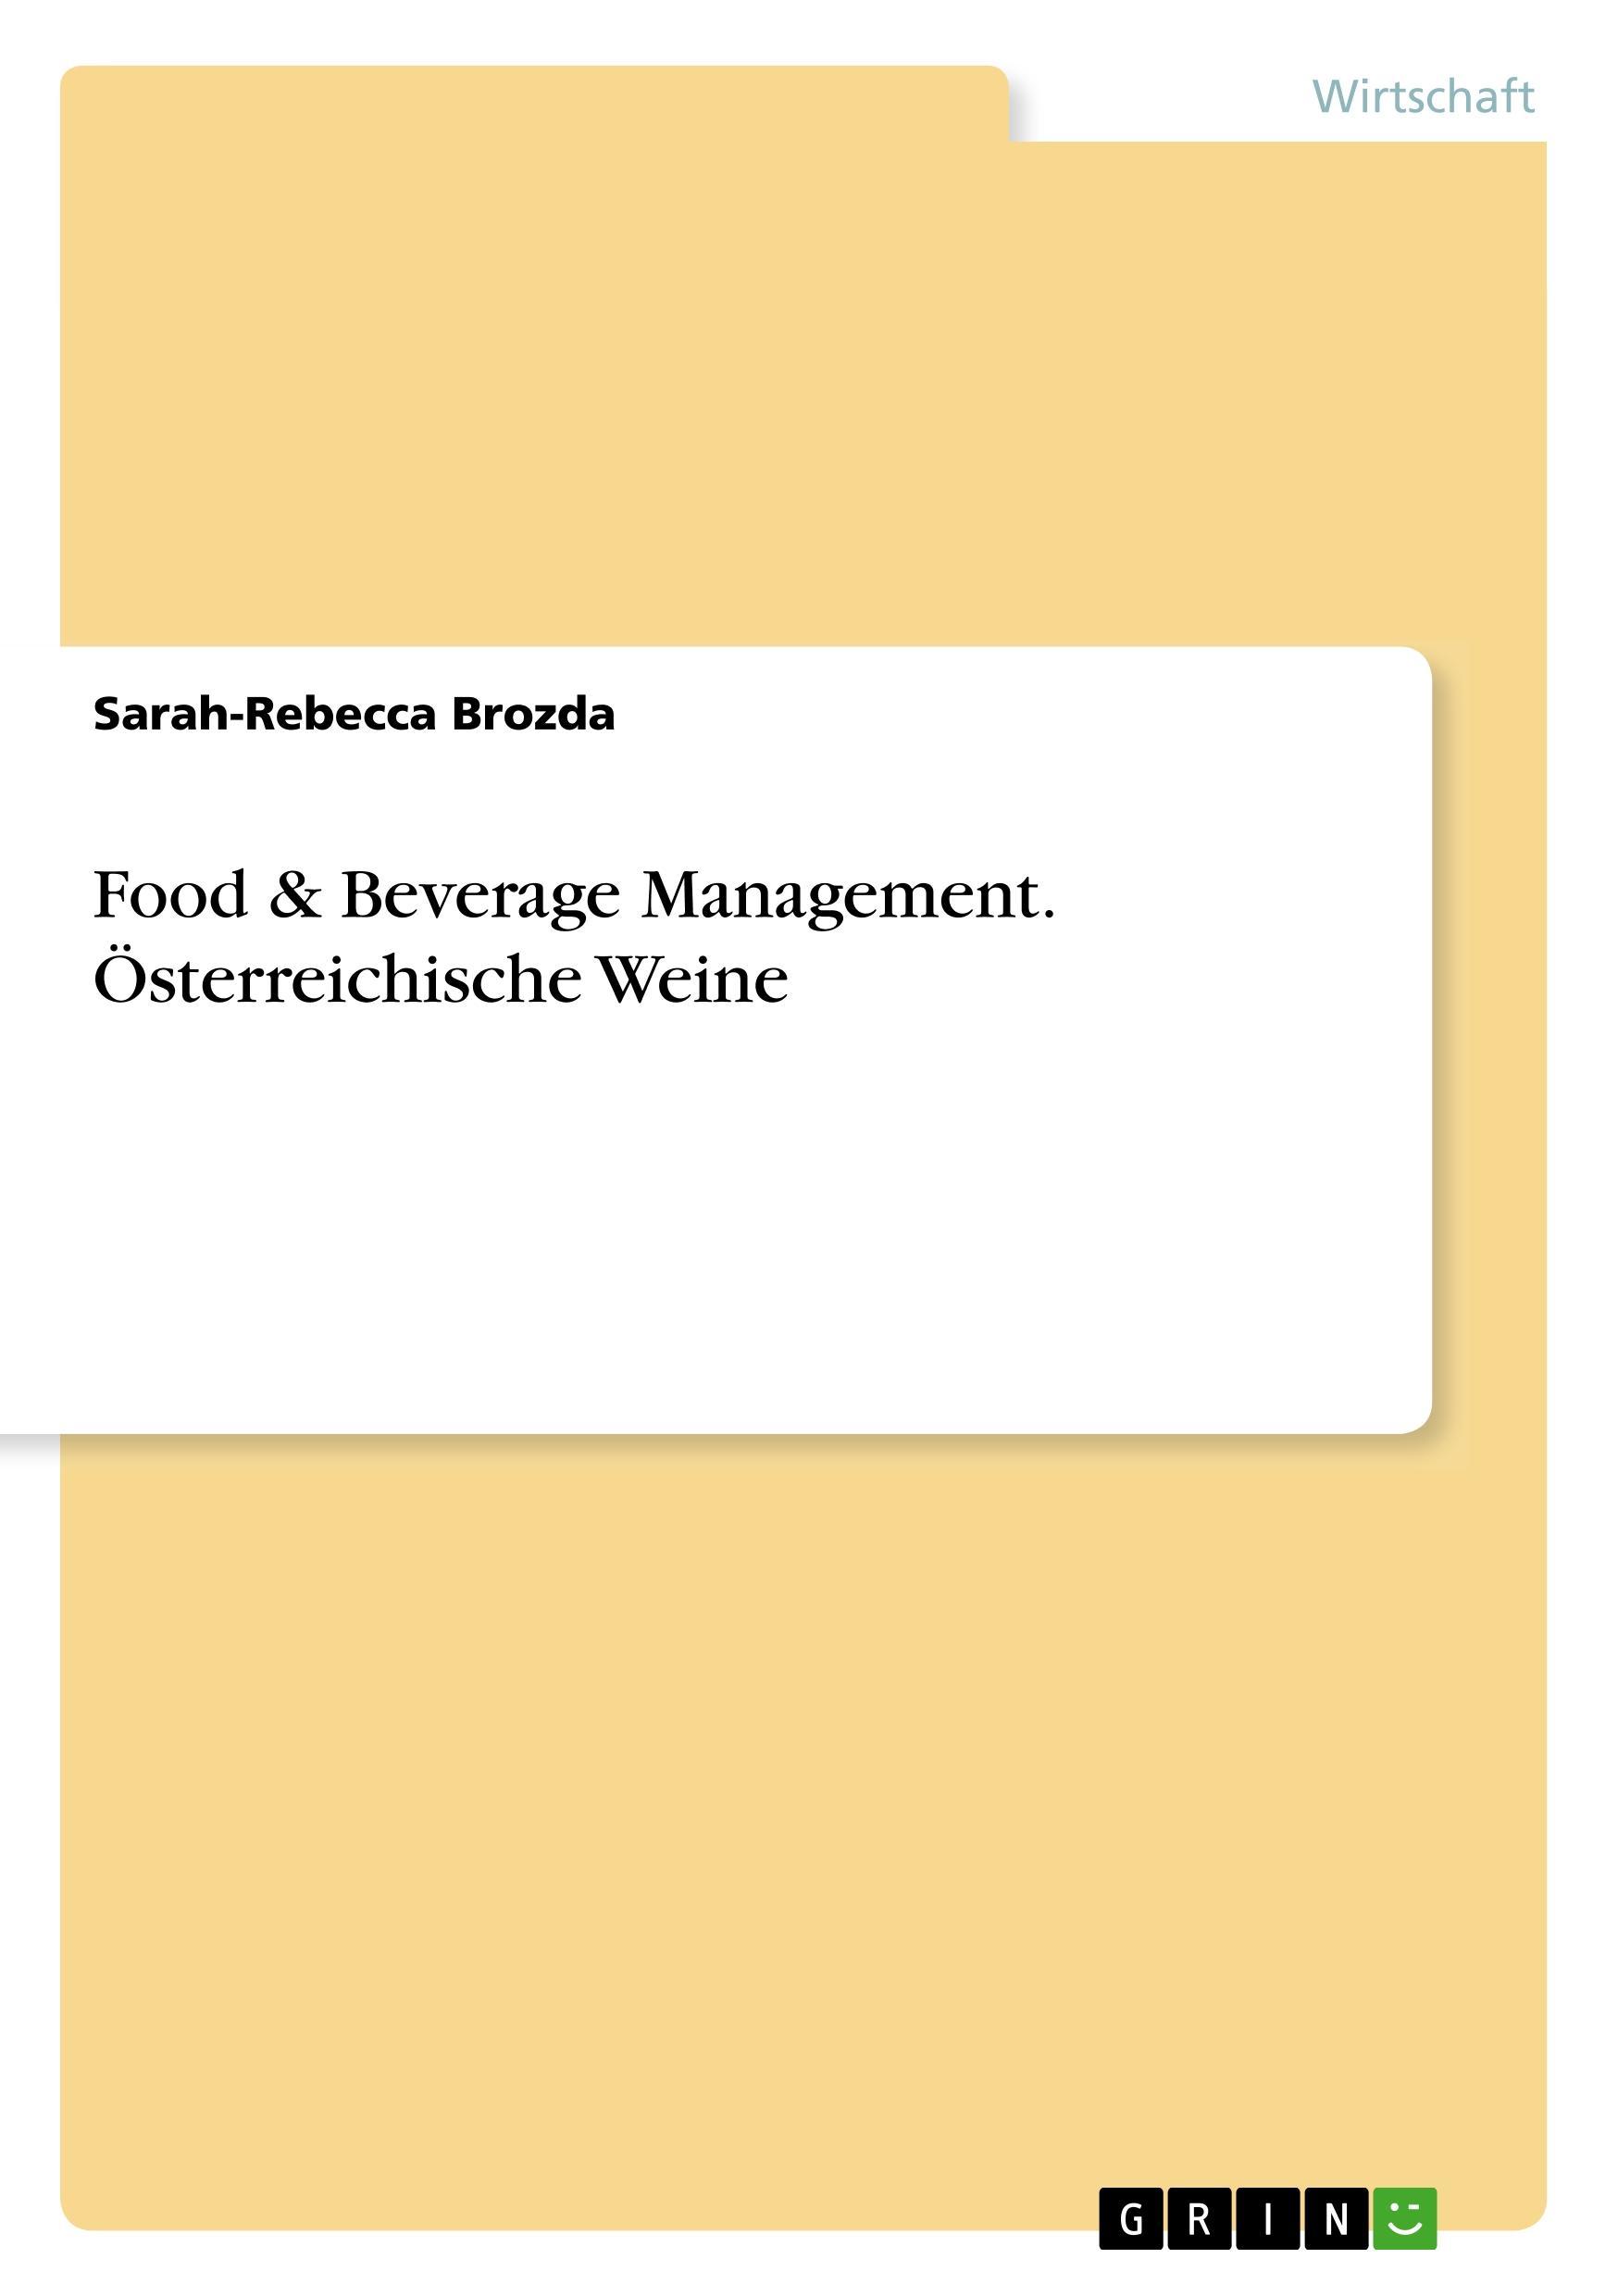 Food & Beverage Management. Oesterreichische Weine - Brozda, Sarah-Rebecca